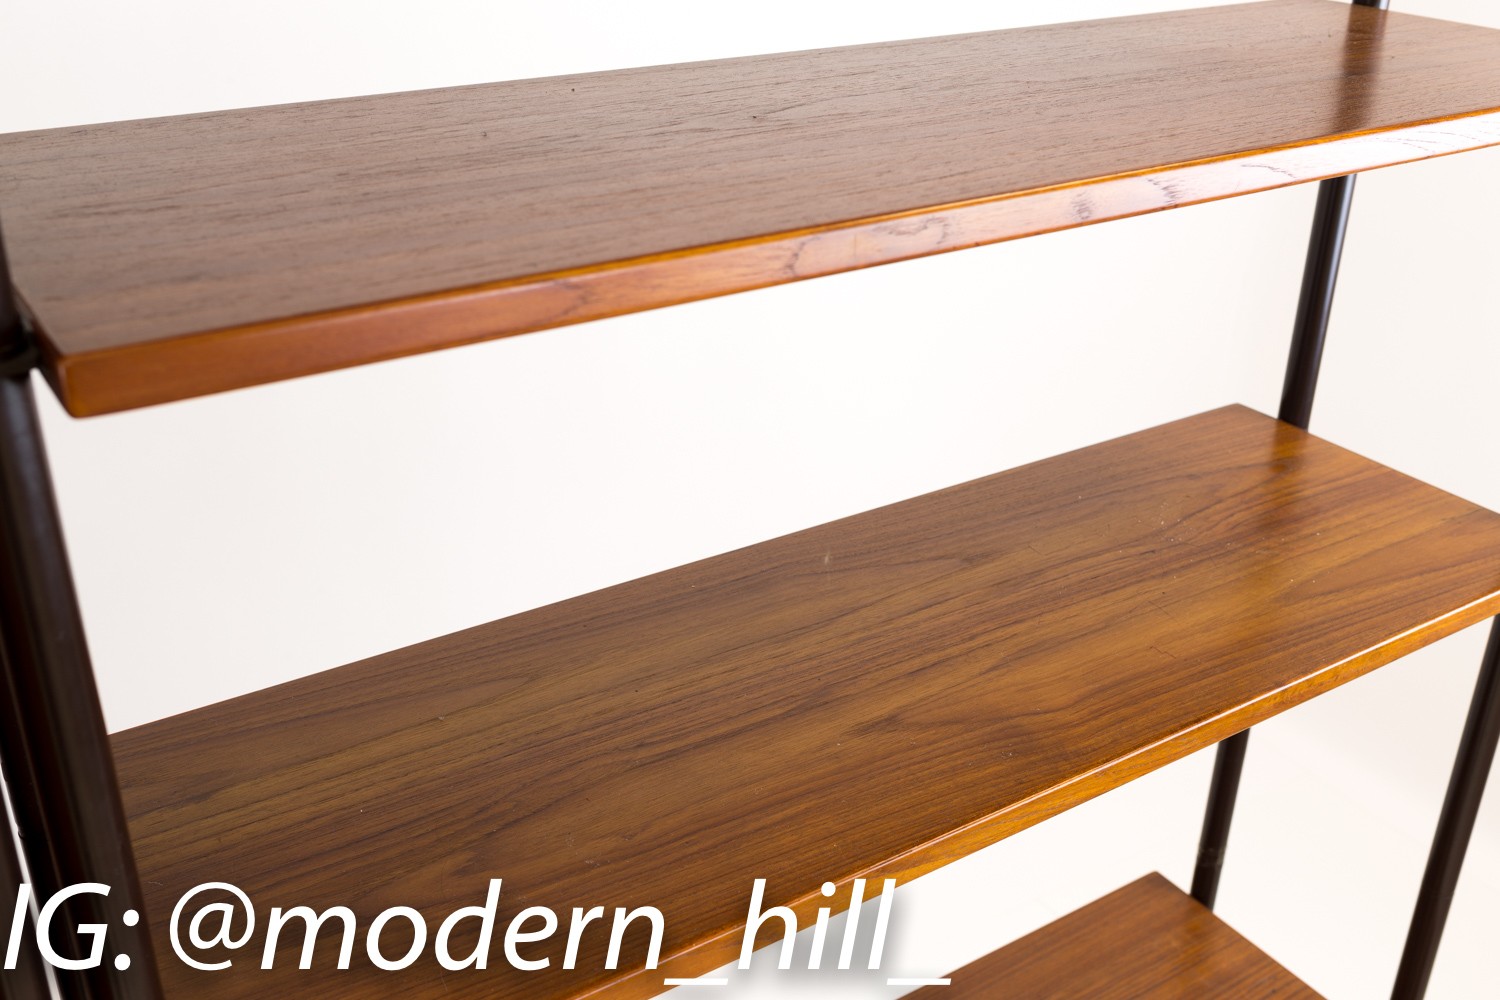 Lyby Mobler Danish Teak Mid Century Modern Freestanding Wall Unit Shelves